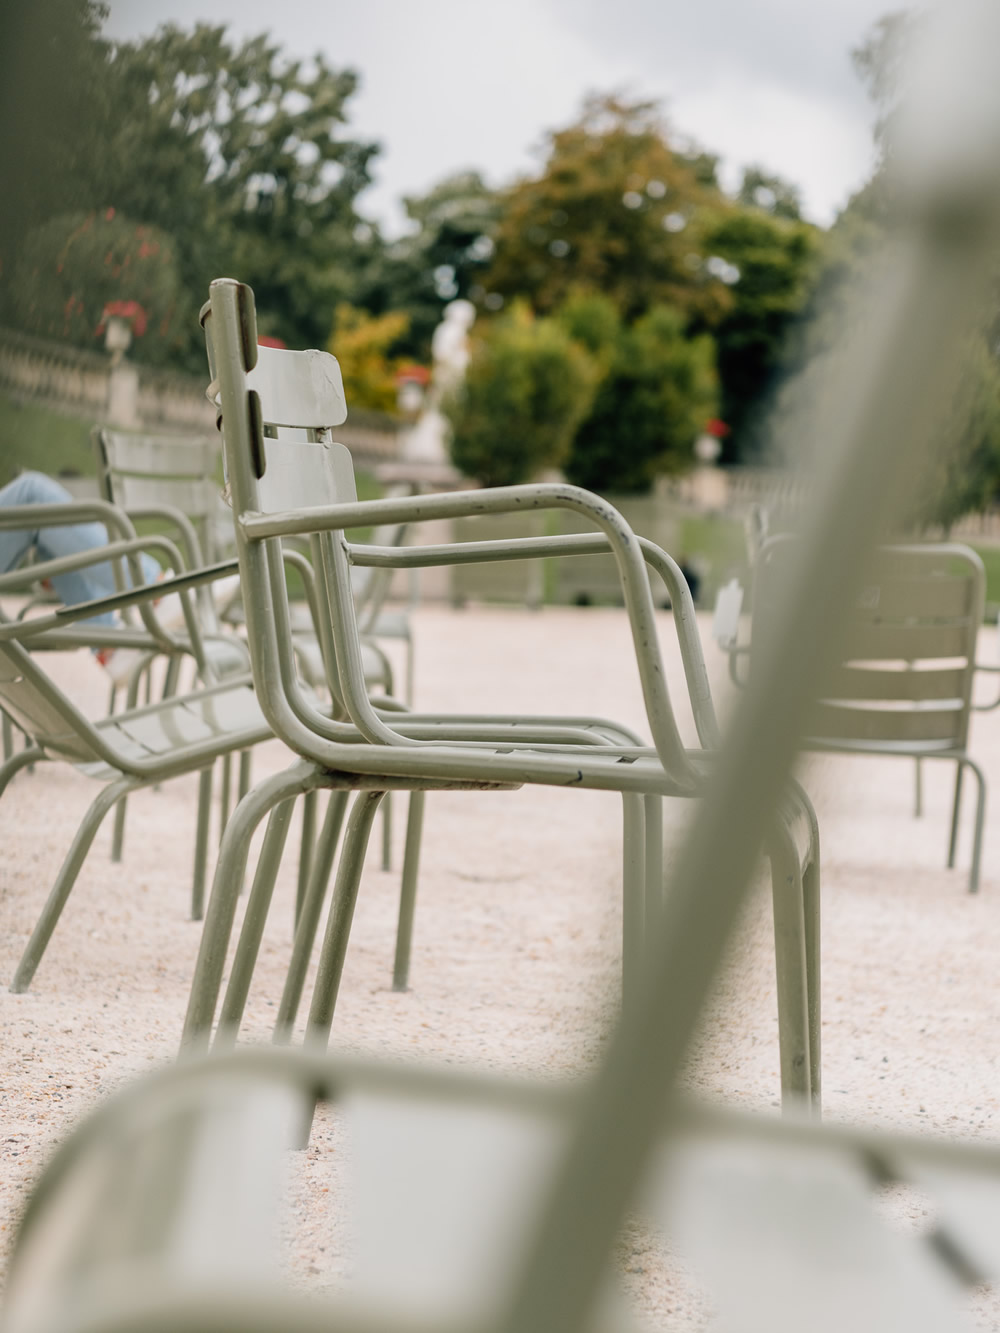 Analytisch Verplicht vezel Jardin du Luxembourg in Parijs bezoeken + beste tips! - Dit is Parijs